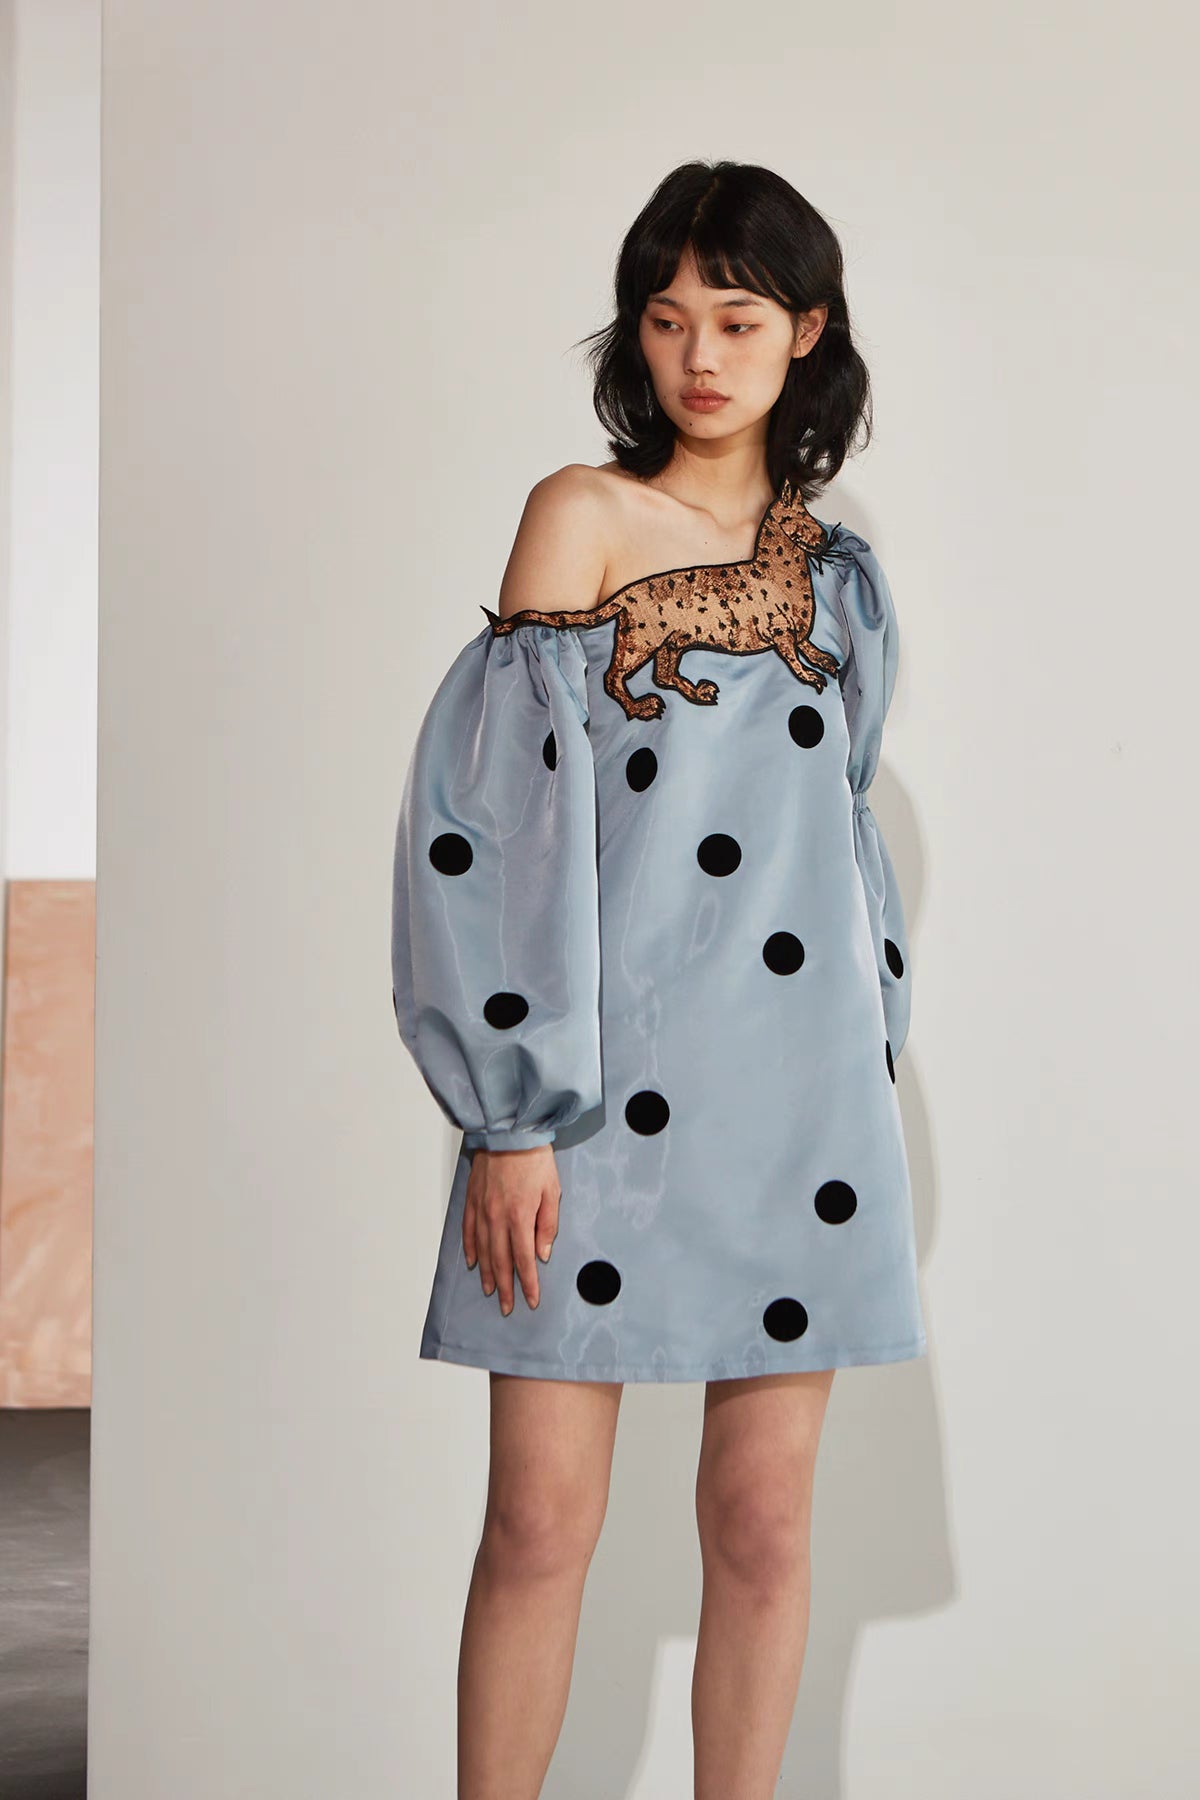 leopard cat polka dot oblique shoulder long sleeved dress 